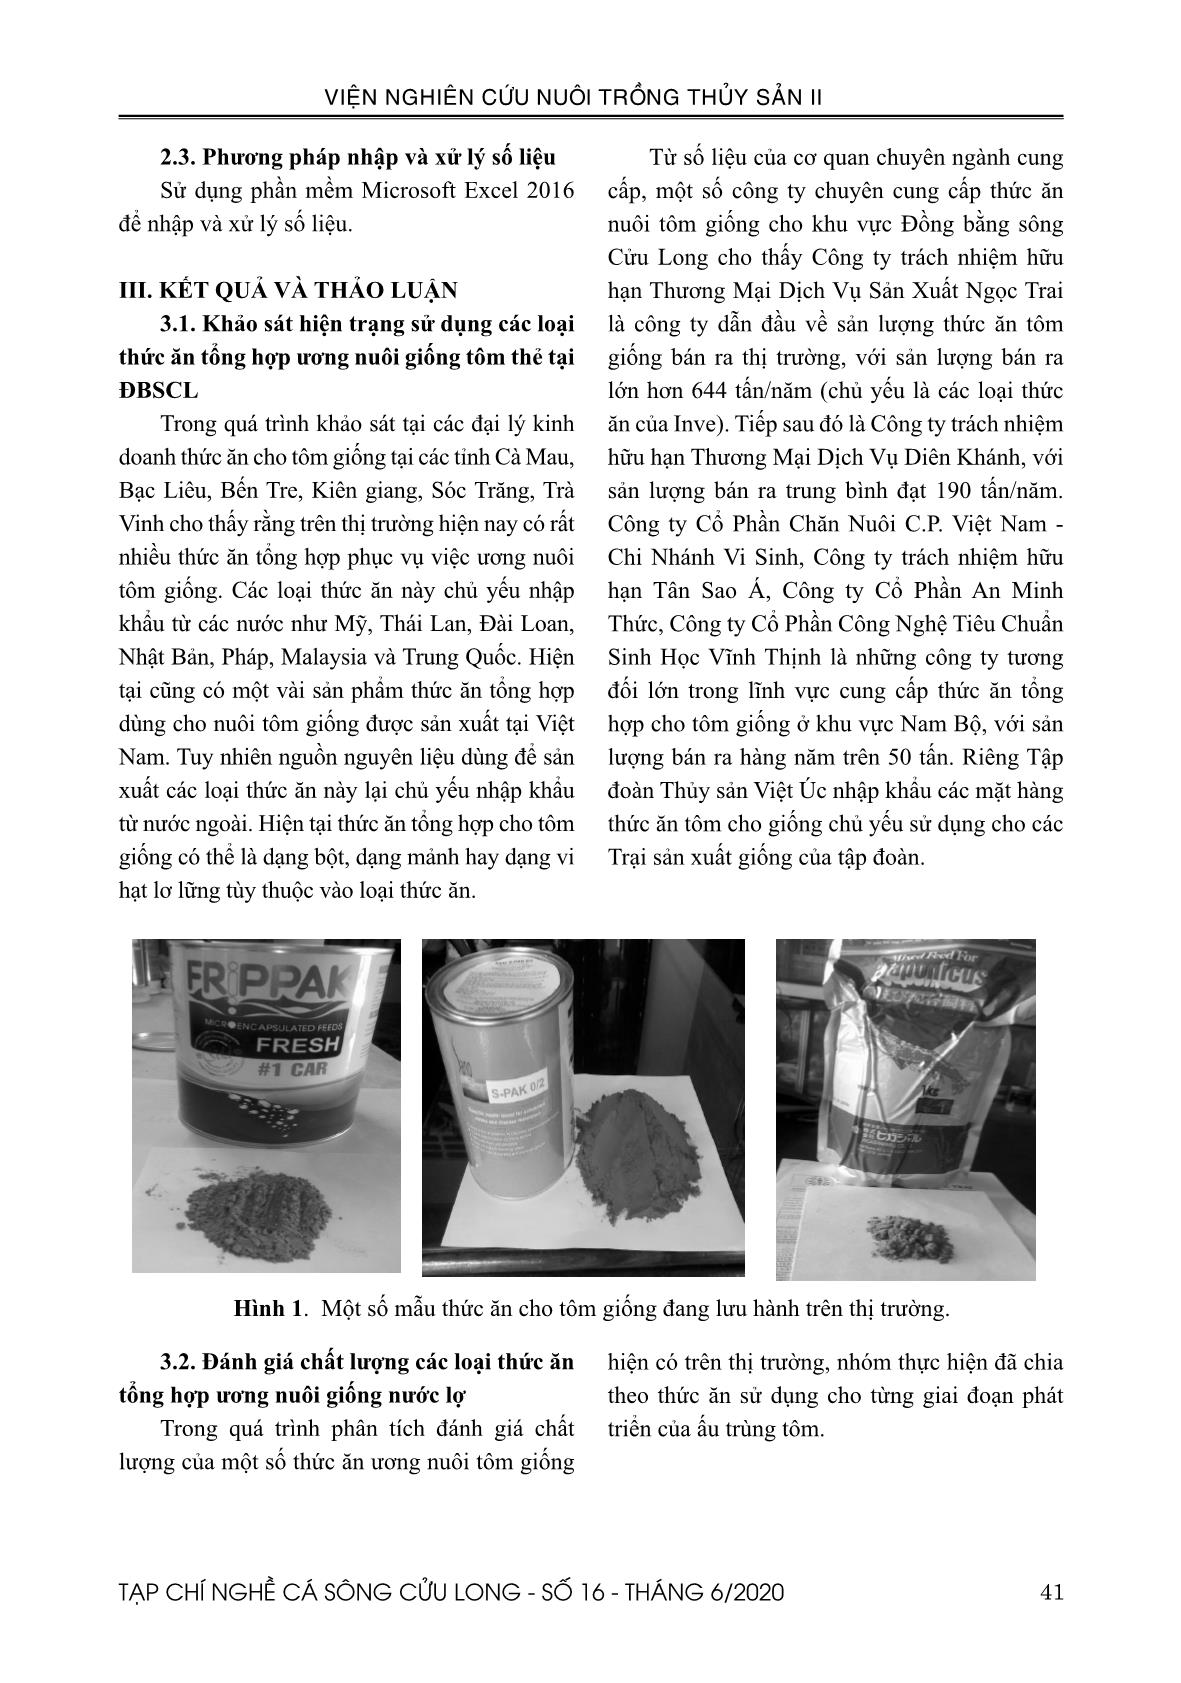 Khảo sát và đánh giá chất lượng thức ăn ương nuôi tôm giống nước lợ tại đồng bằng sông Cửu Long trang 4